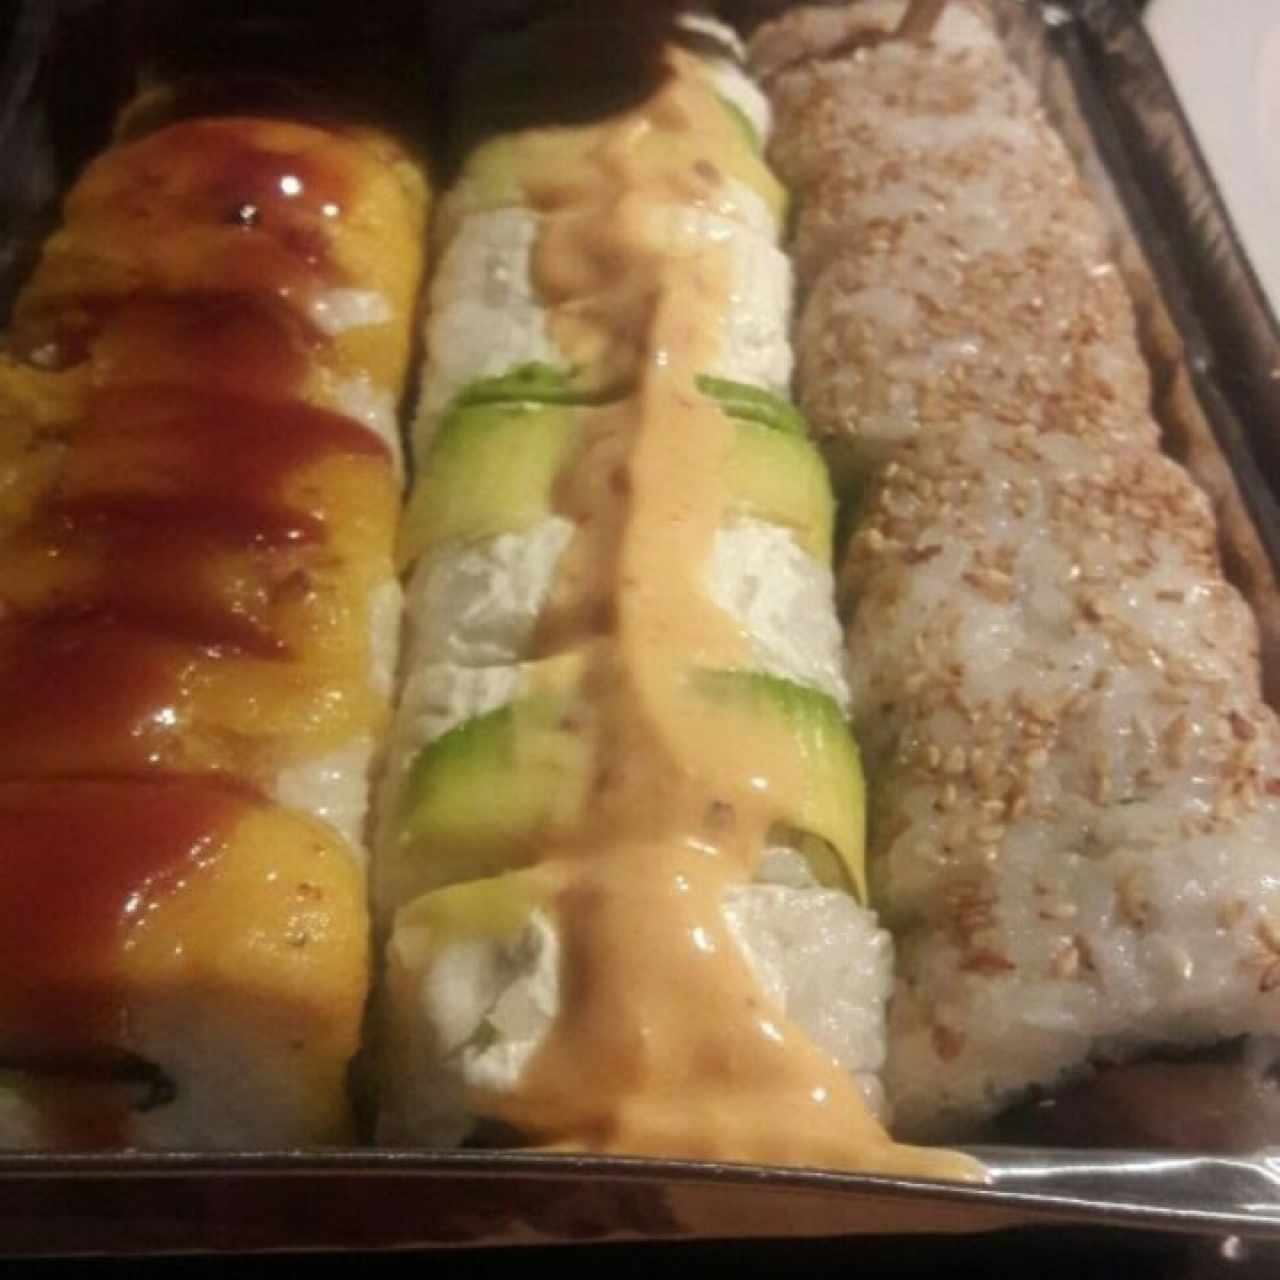 Bandeja de Sushi